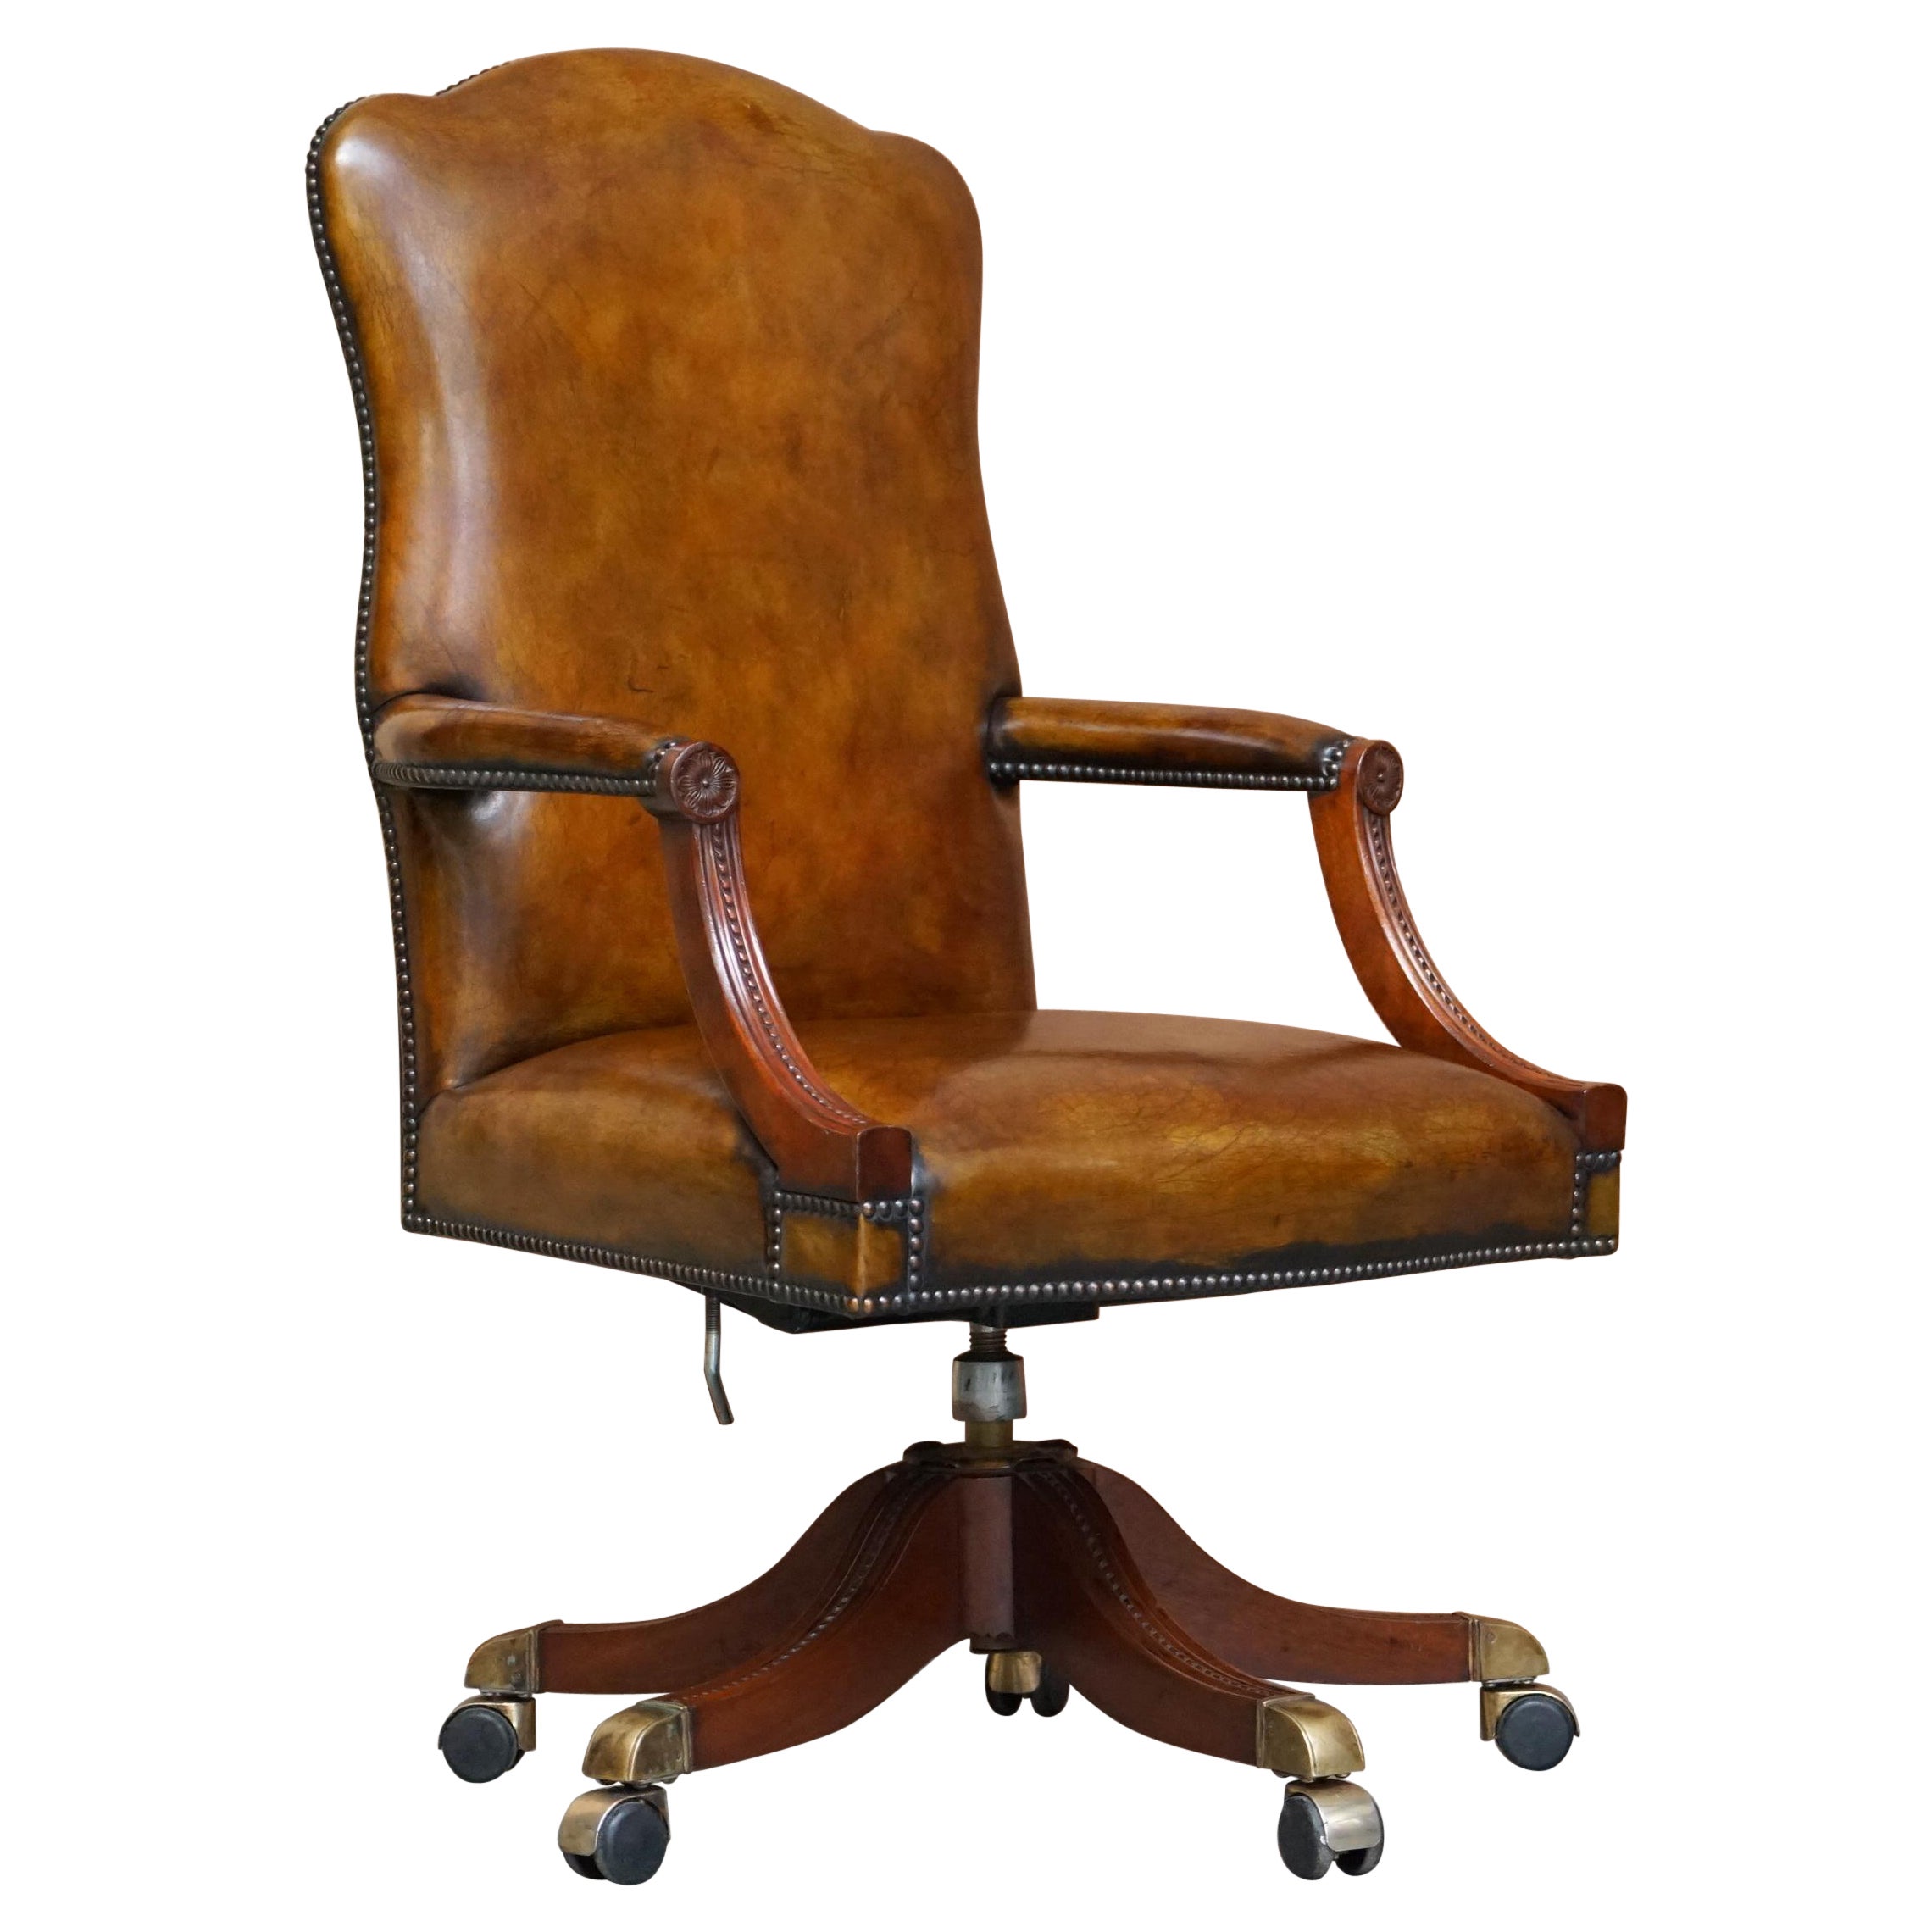 Ravissant fauteuil vintage restauré en cuir marron et cadre en chêne pour réalisateurs de films